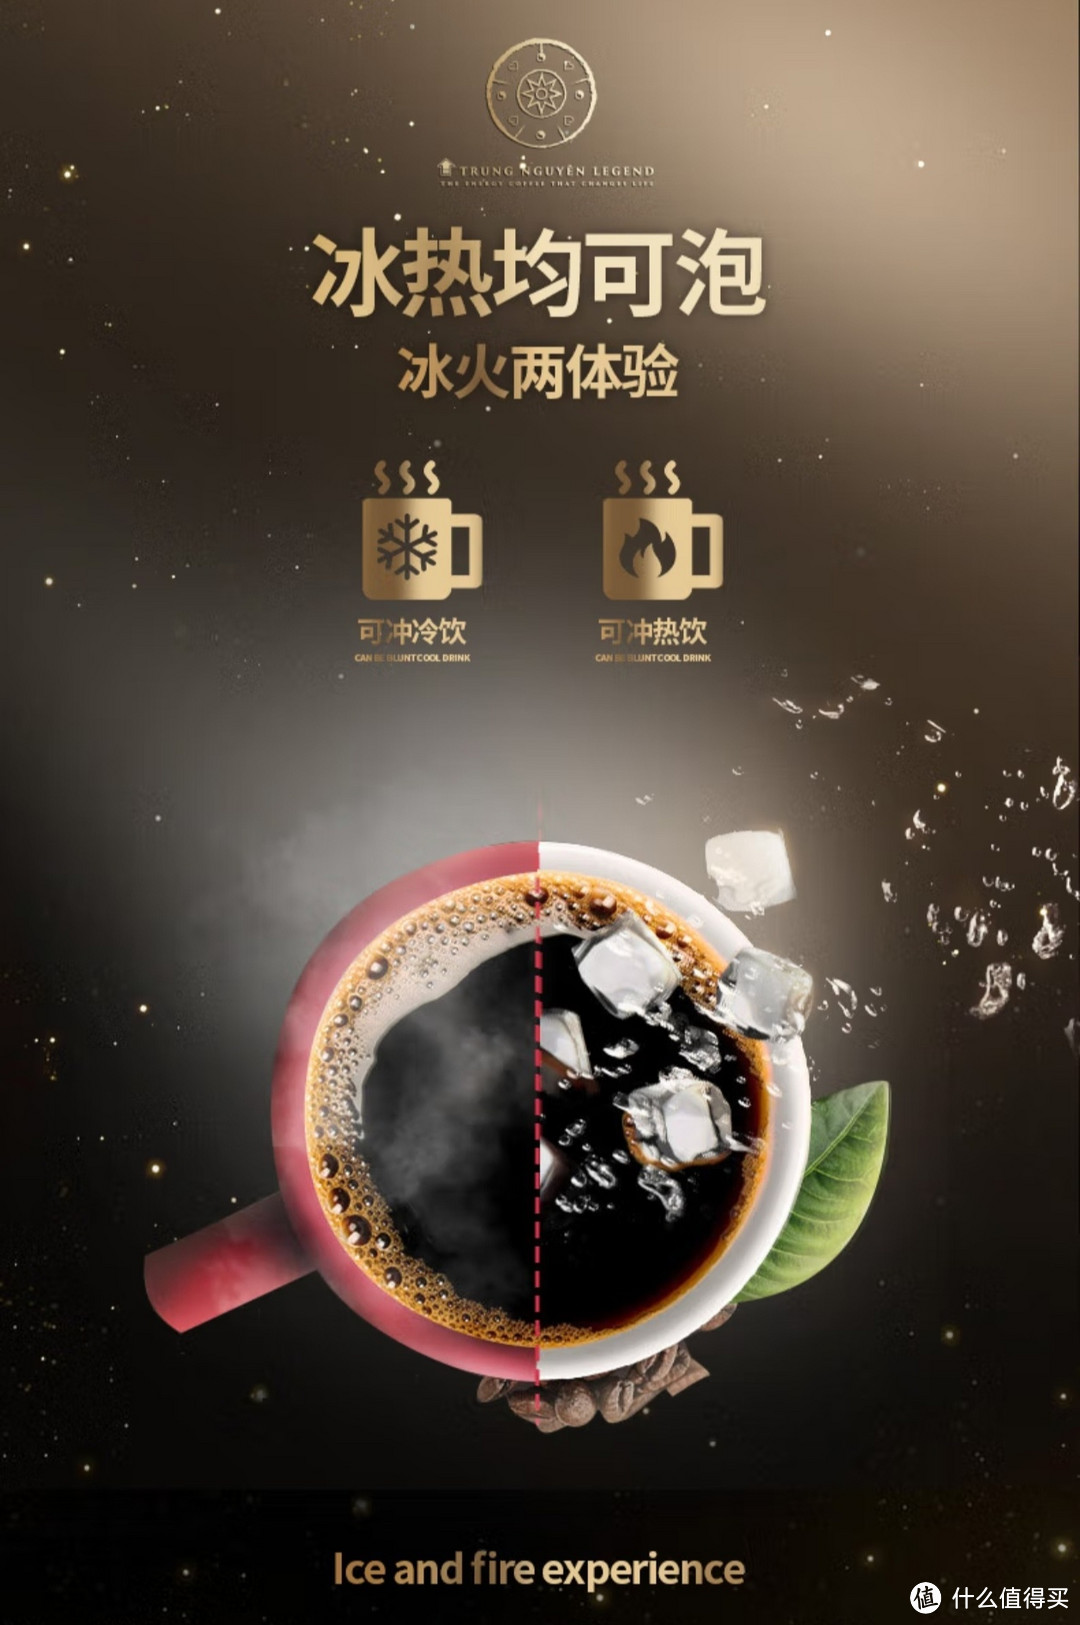 G7 越南进口中原美式速溶黑咖啡无蔗糖燃0脂健身咖啡粉200包2g*200